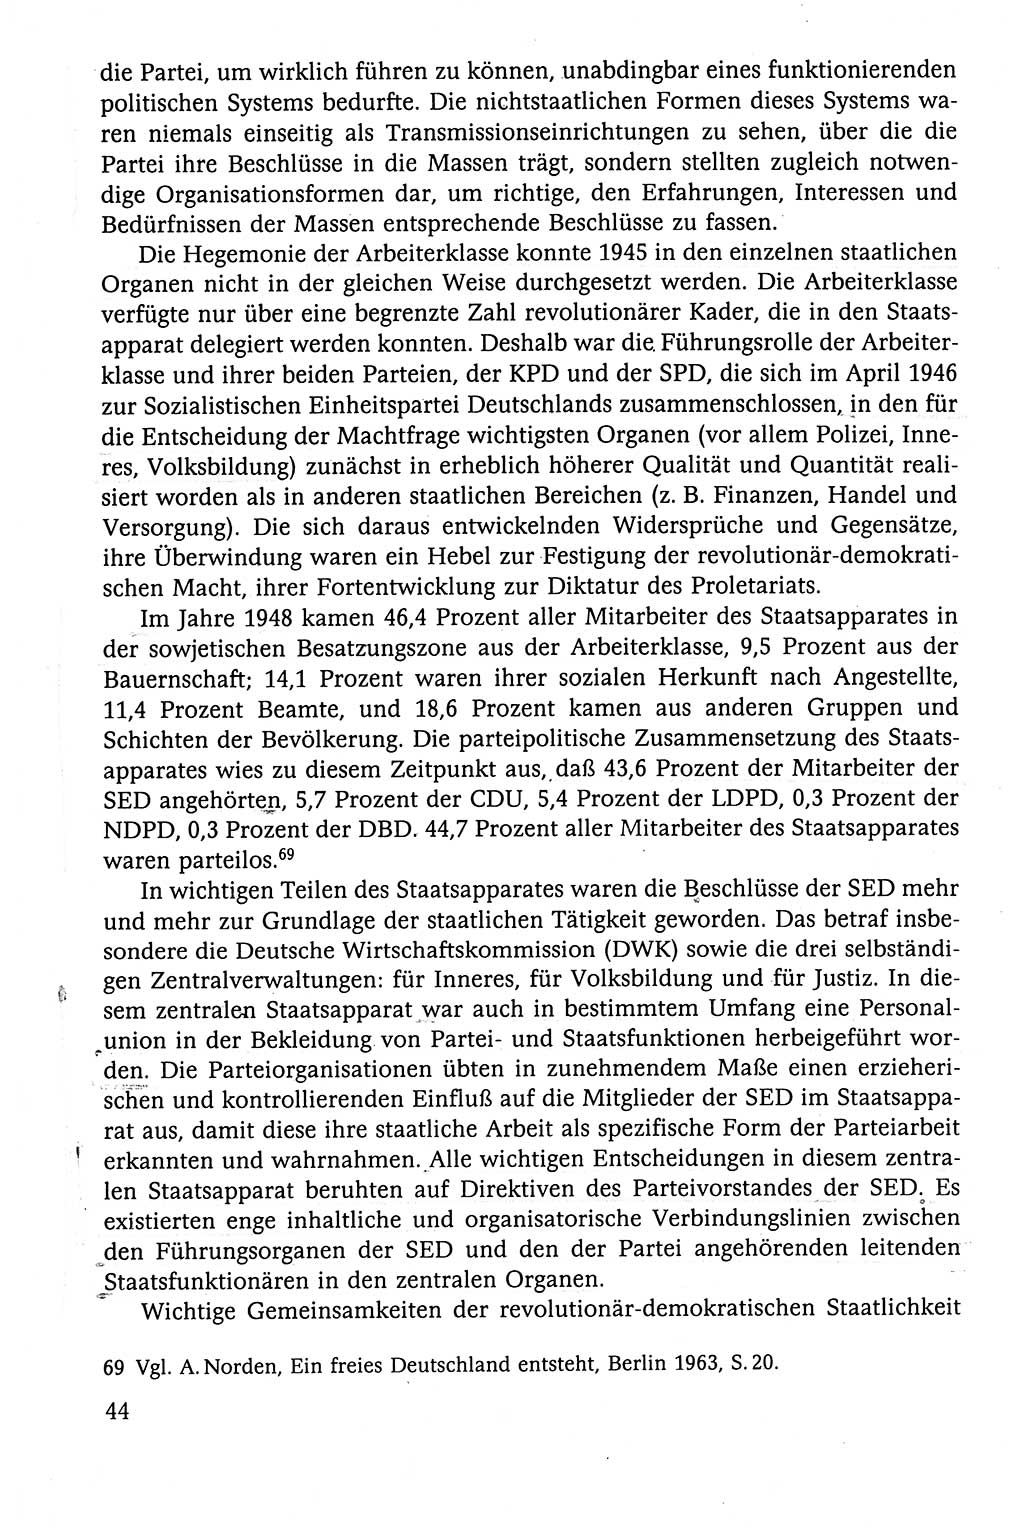 Der Staat im politischen System der DDR (Deutsche Demokratische Republik) 1986, Seite 44 (St. pol. Sys. DDR 1986, S. 44)